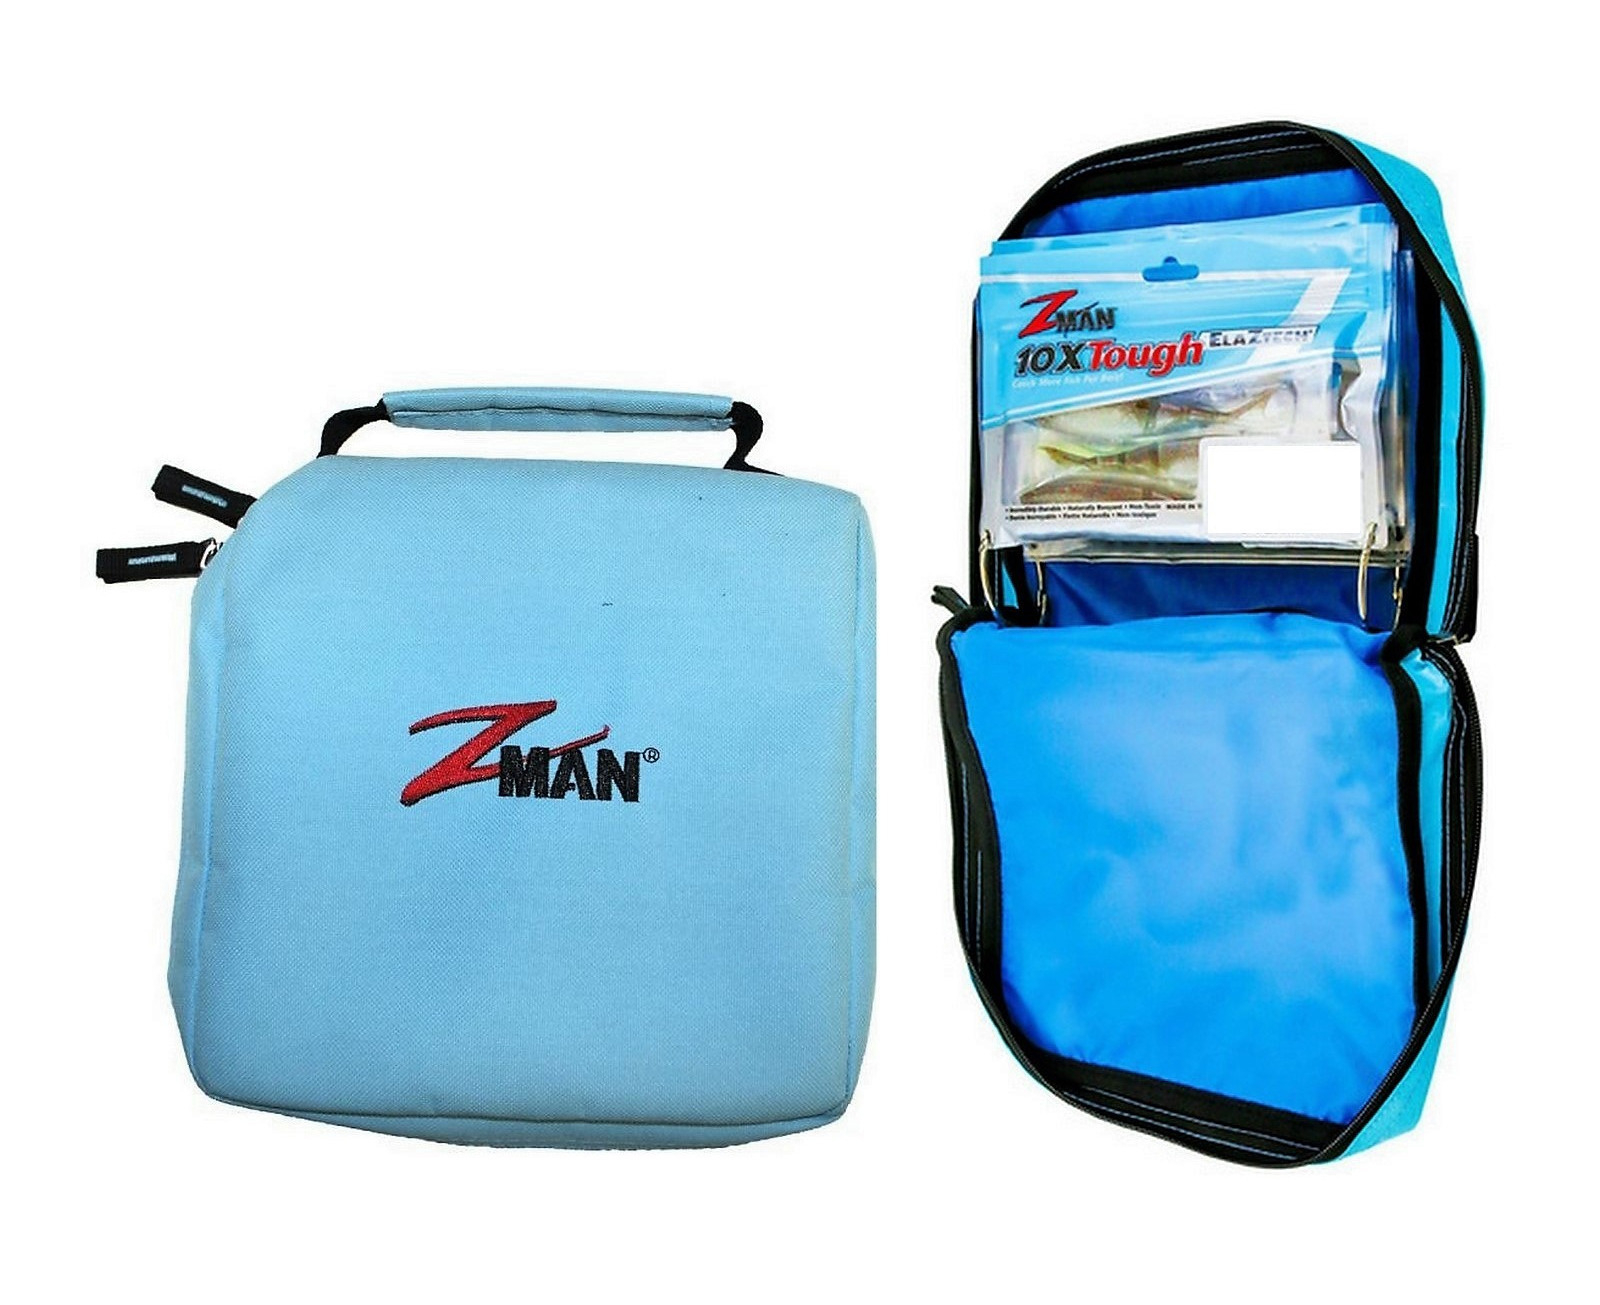 Zman Bait Binderz Soft Plastics Wallet - Zman Plastics Lure Holder